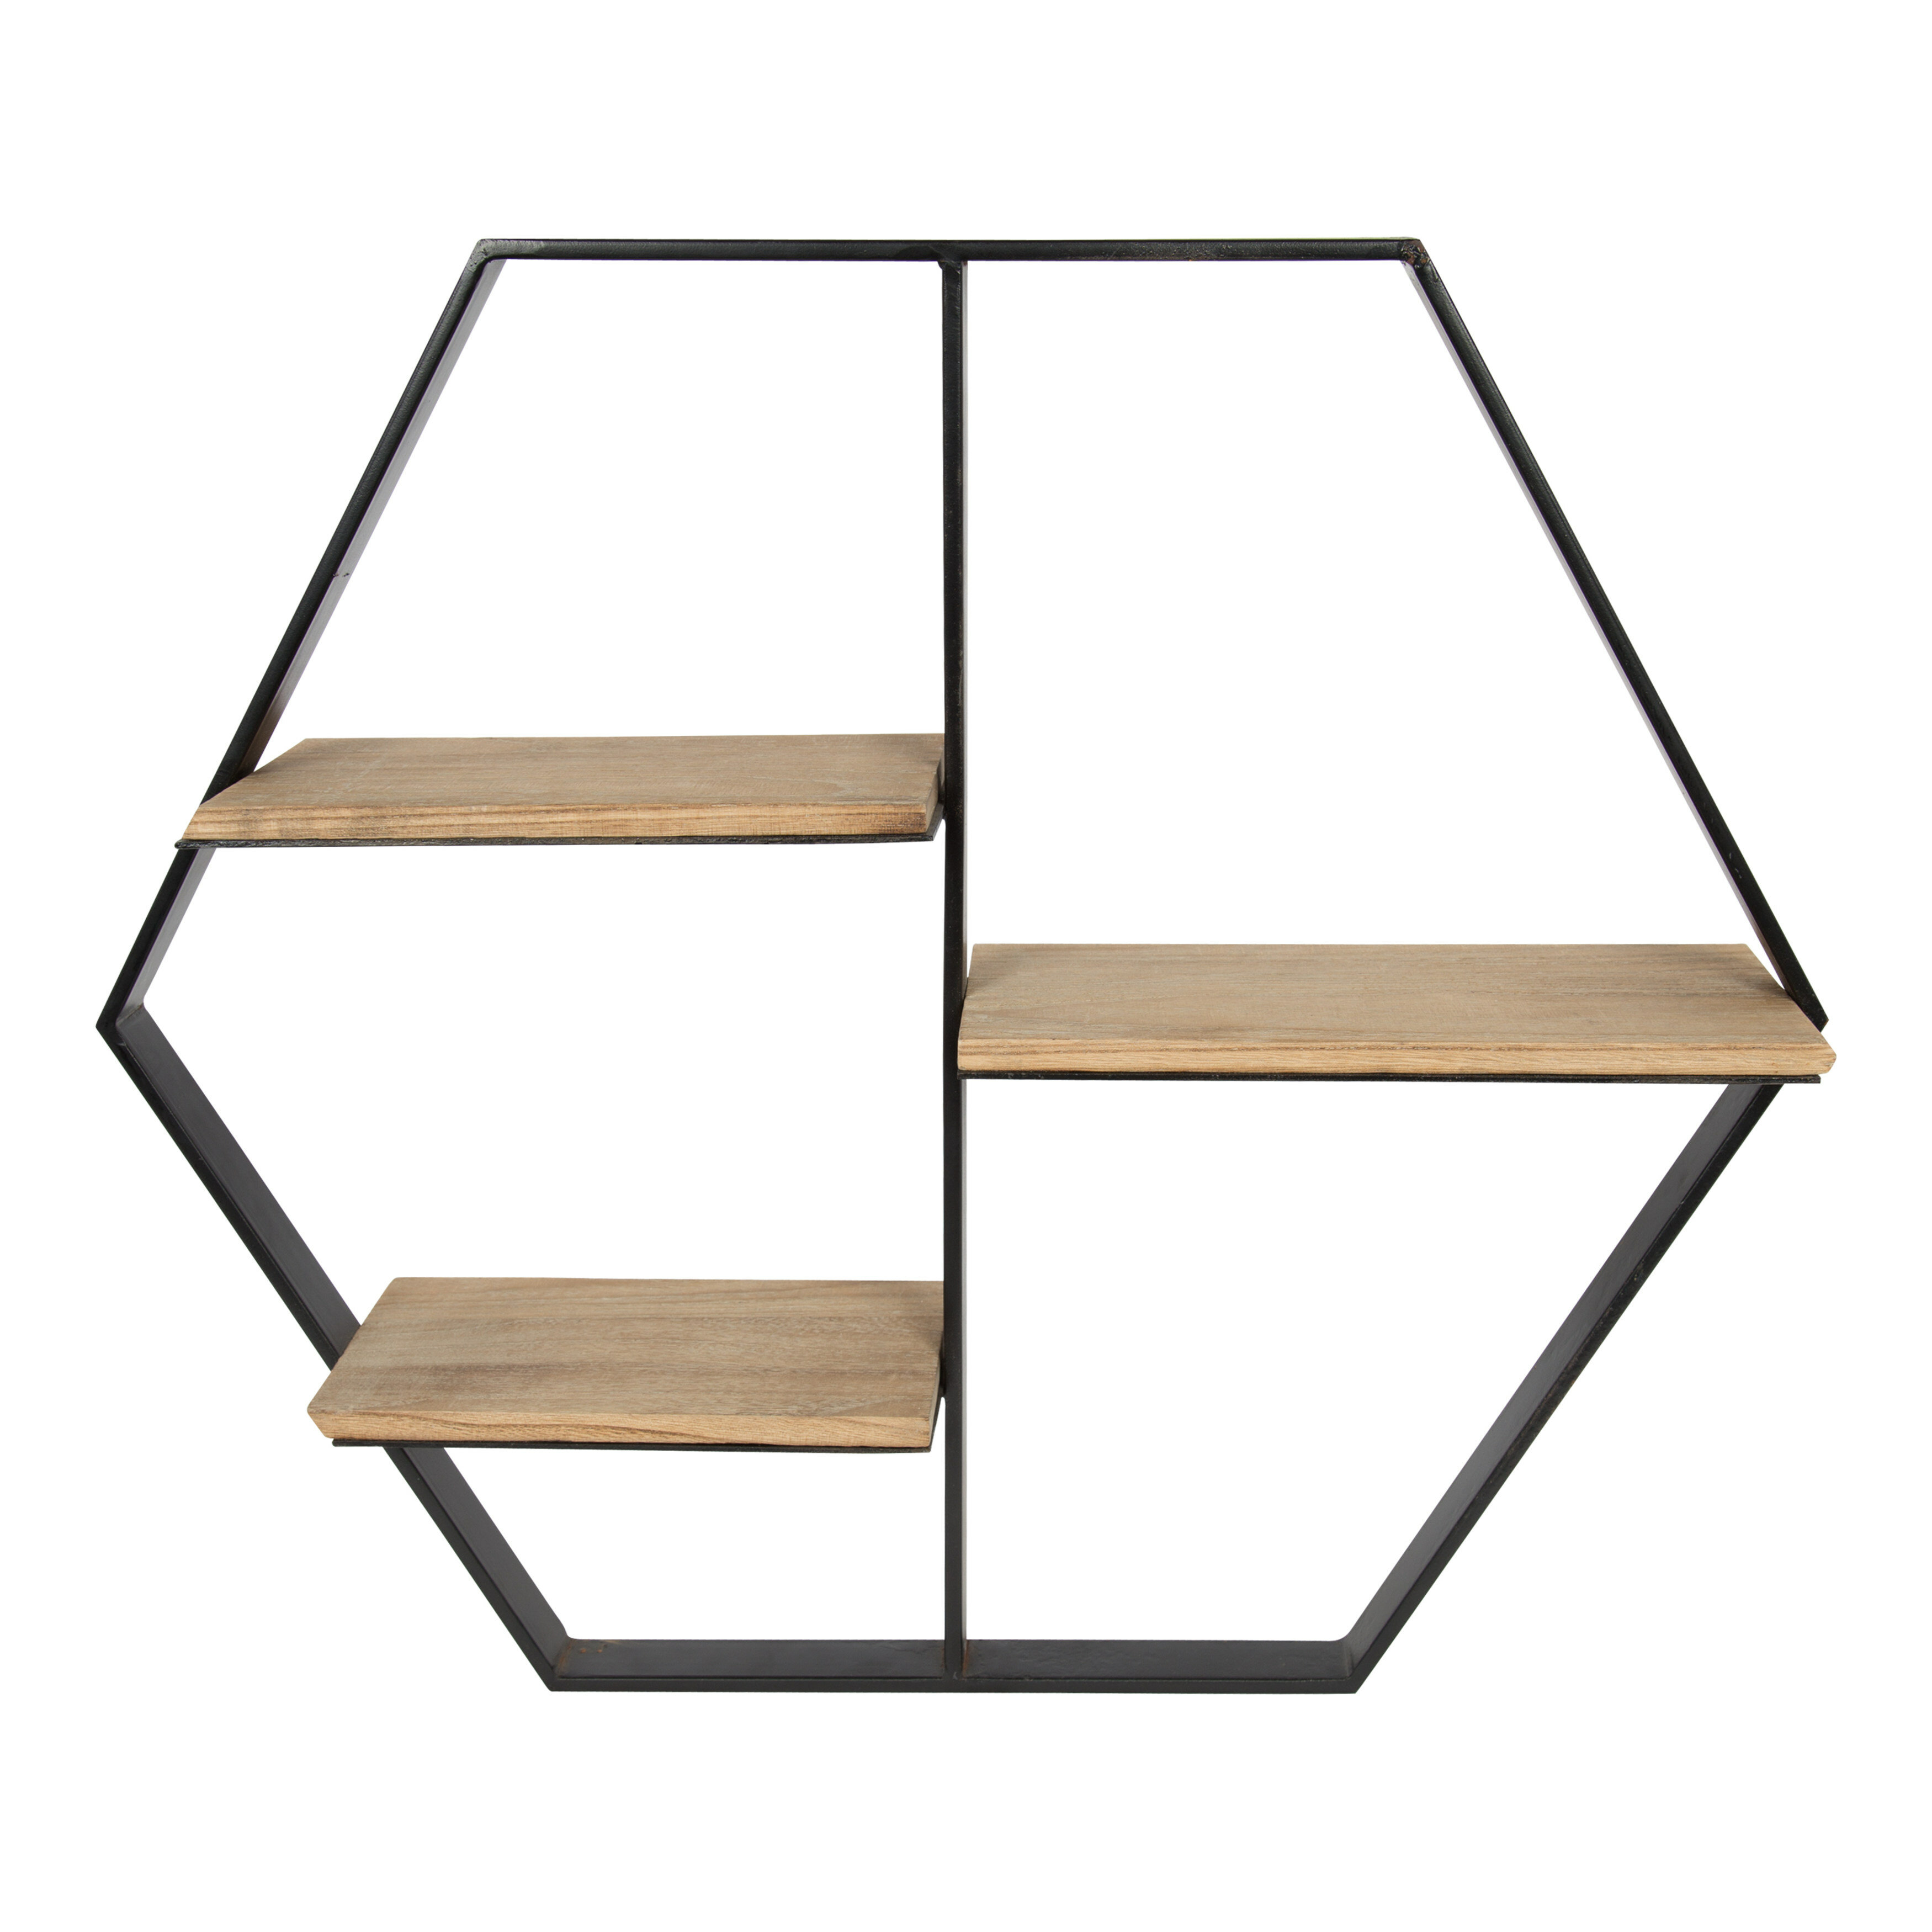 Home Furniture Decorative Wall Mount Wooden Hexagon Wall Shelf Art Design 3PCS